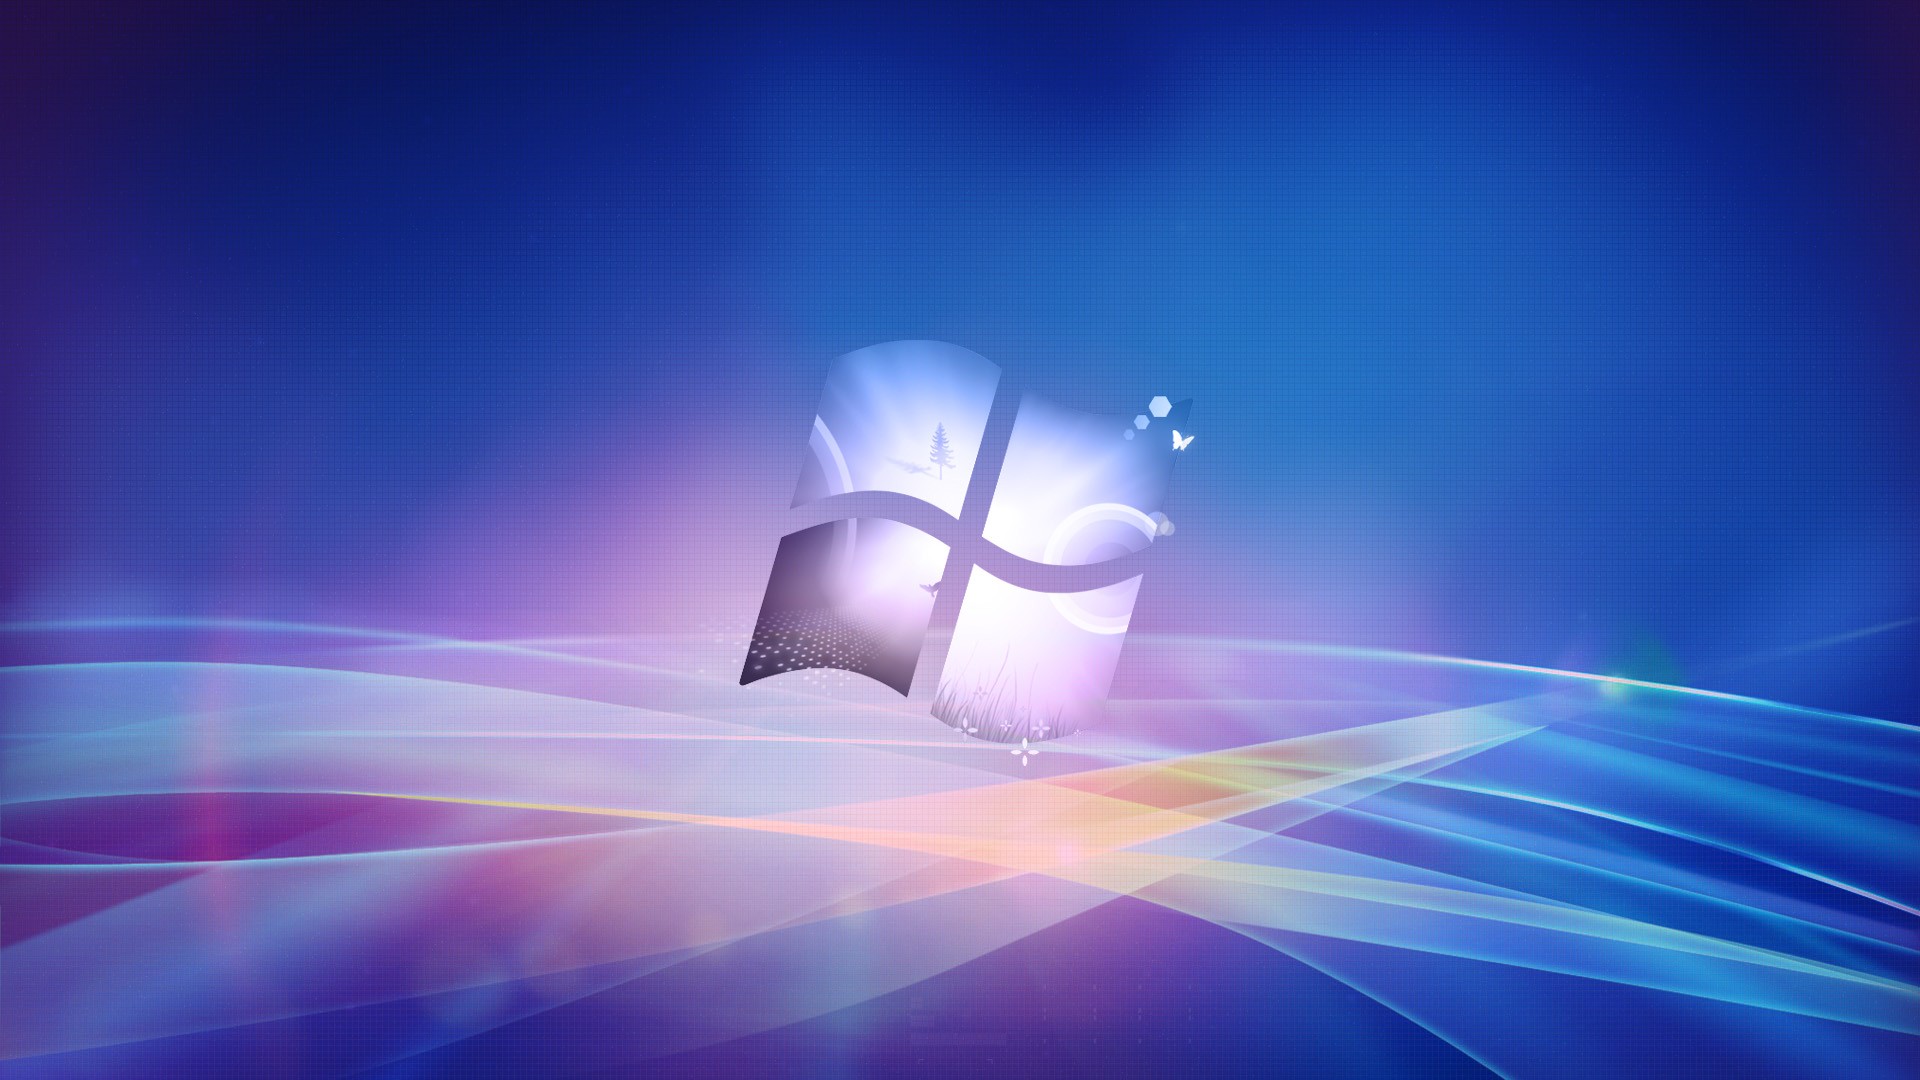 Windows Desktop Background Image Information